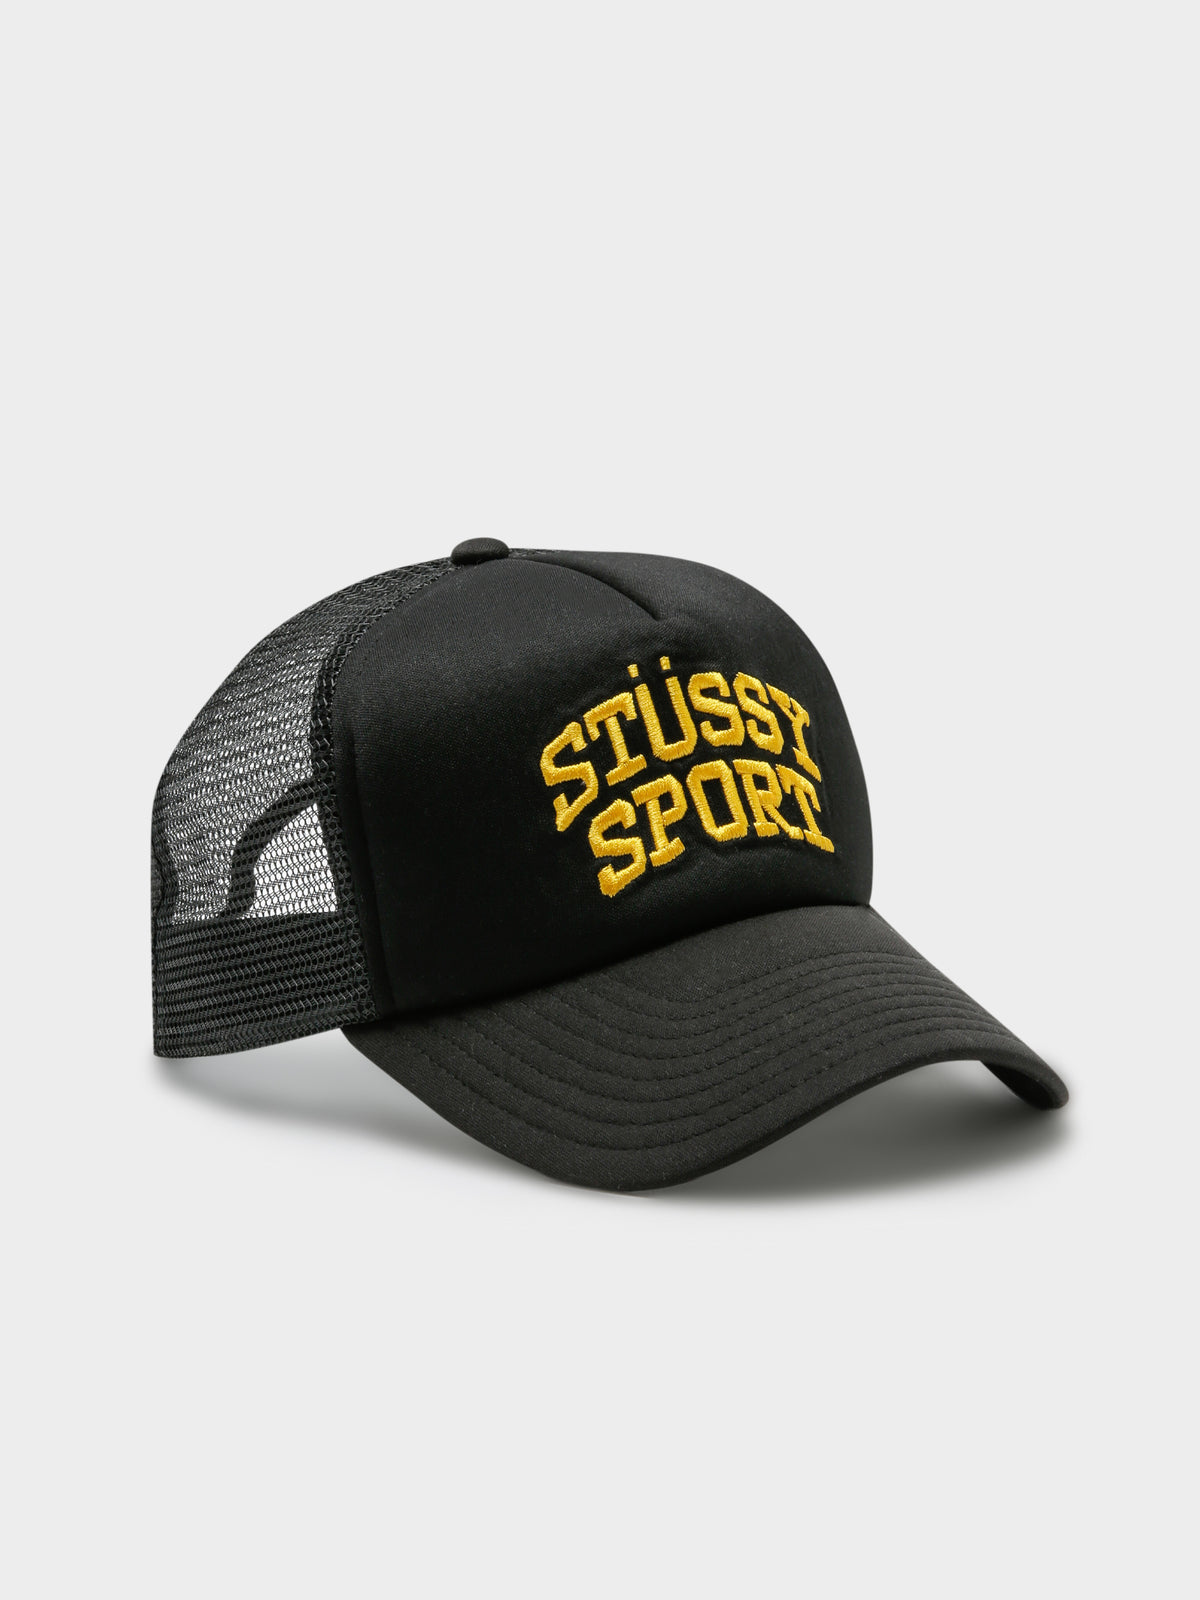 Stussy Sport Trucker Cap in Black